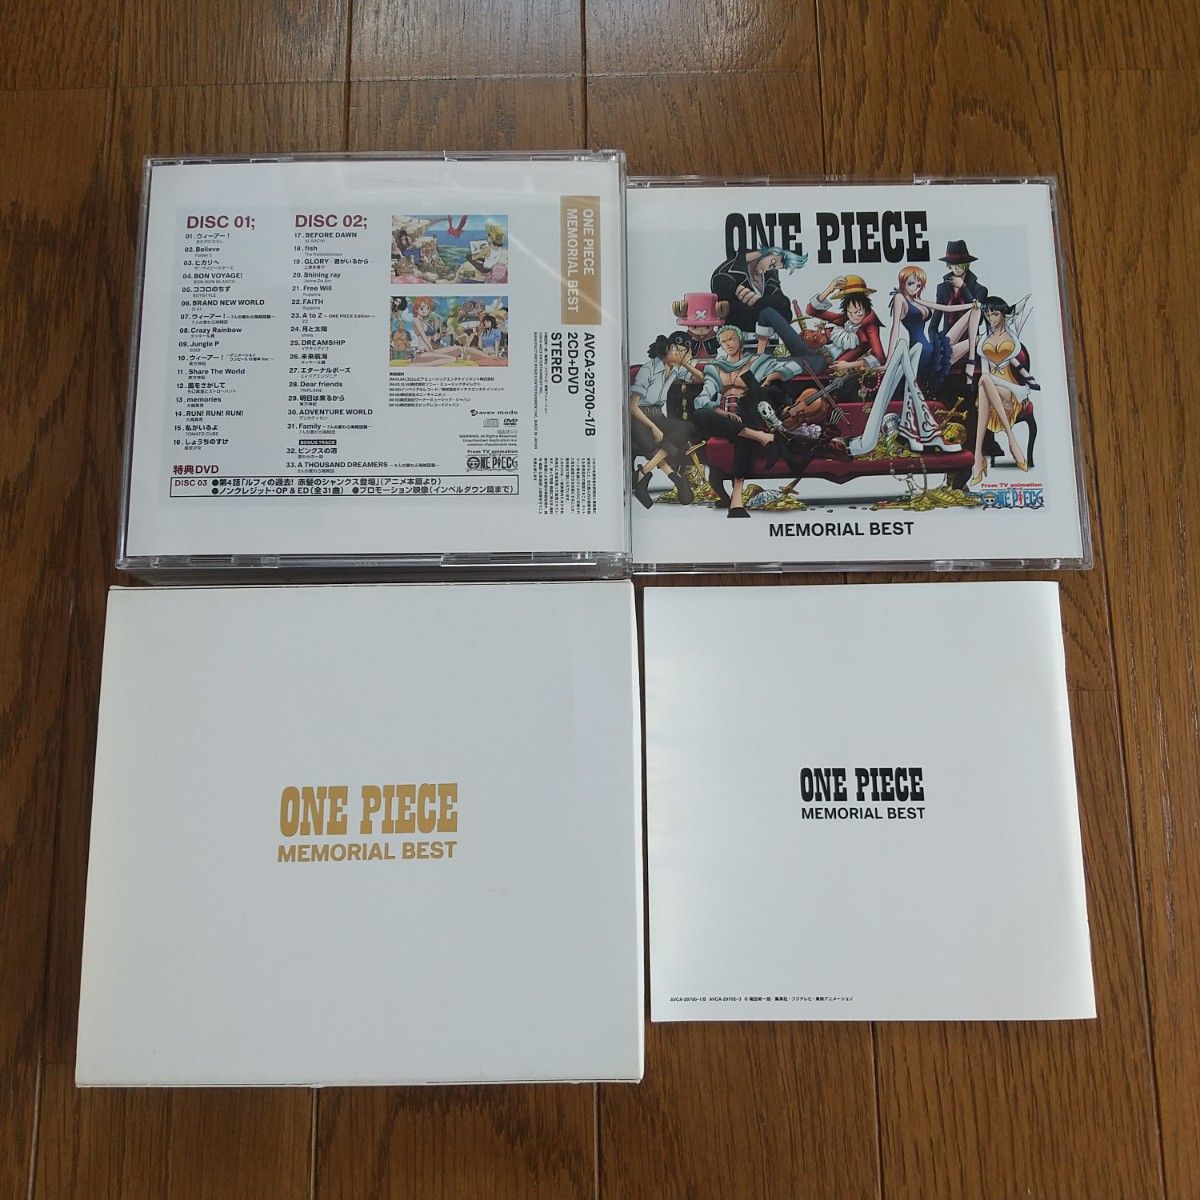 3枚組 2CD＋1DVD 主題歌アルバム ONE PIECE ベストアルバム